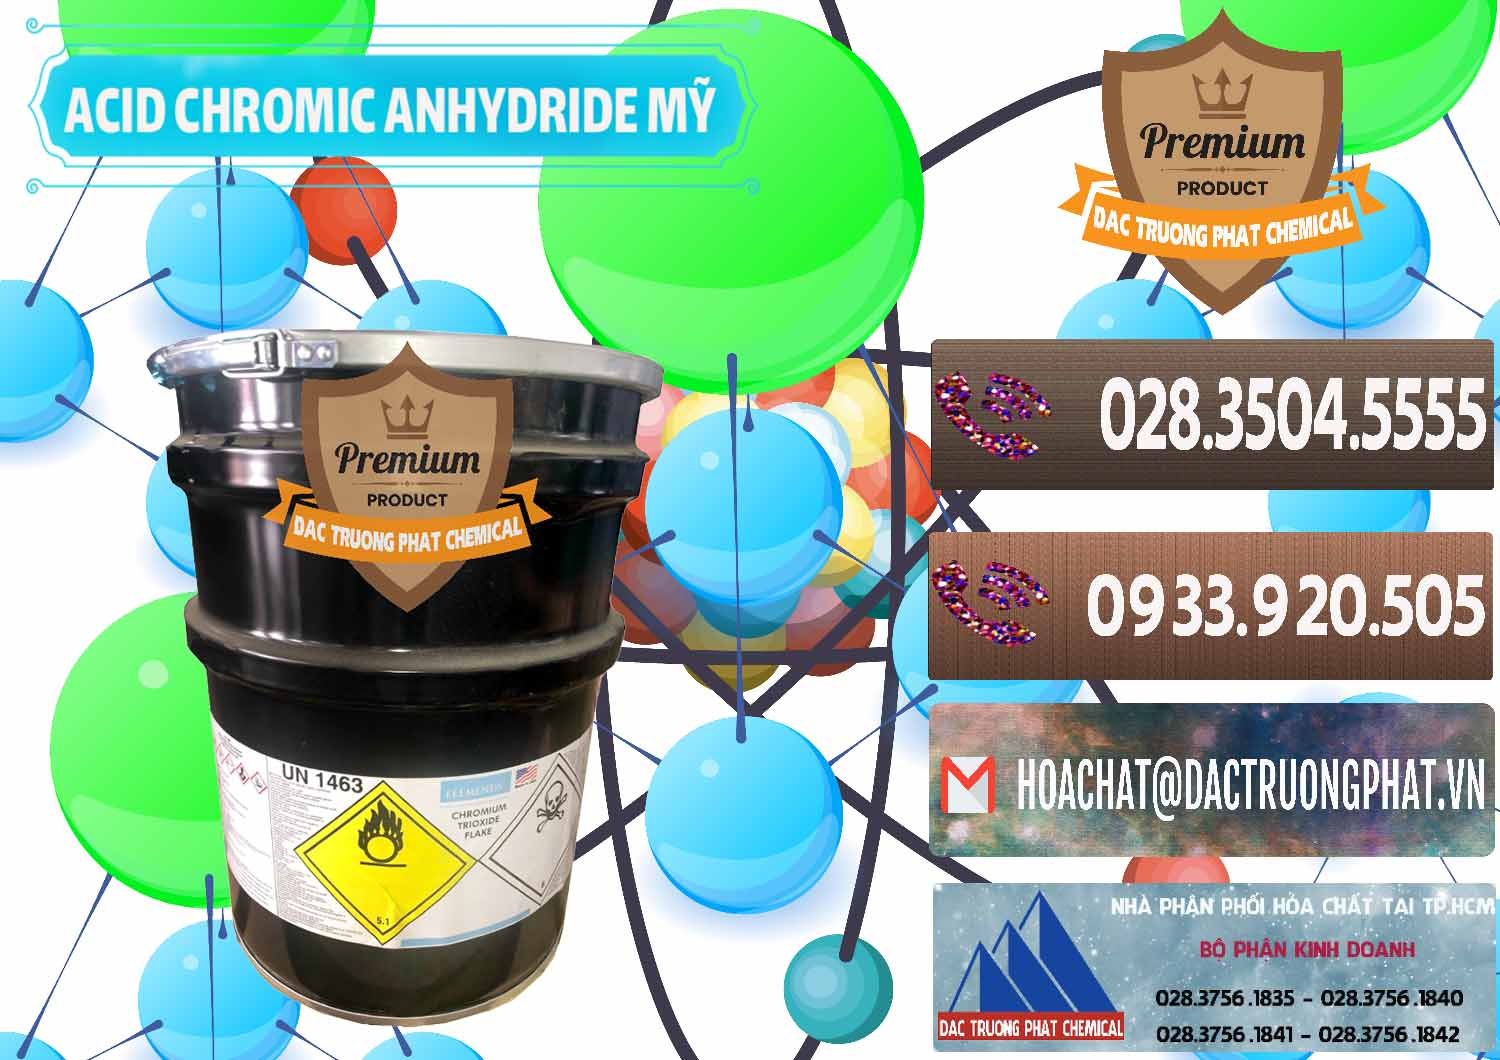 Công ty bán và phân phối Acid Chromic Anhydride - Cromic CRO3 USA Mỹ - 0364 - Cty phân phối và cung cấp hóa chất tại TP.HCM - hoachatviet.net